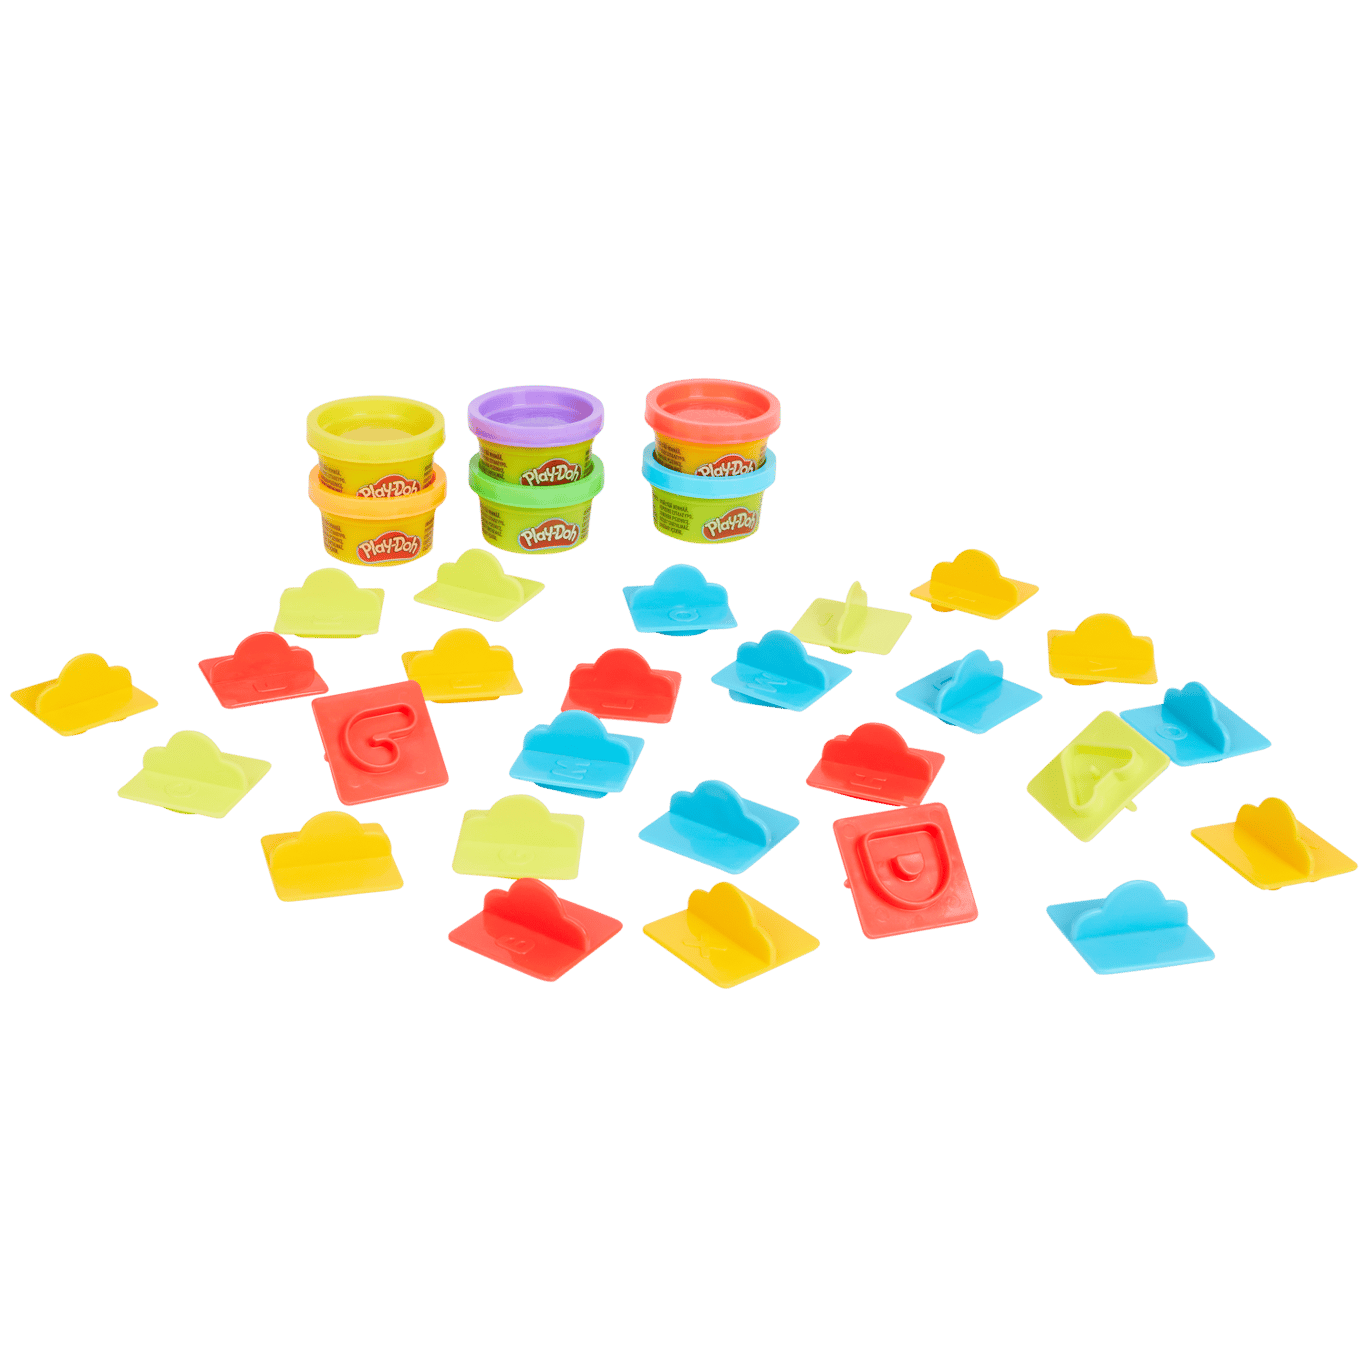 Play-Doh Starter-Kit